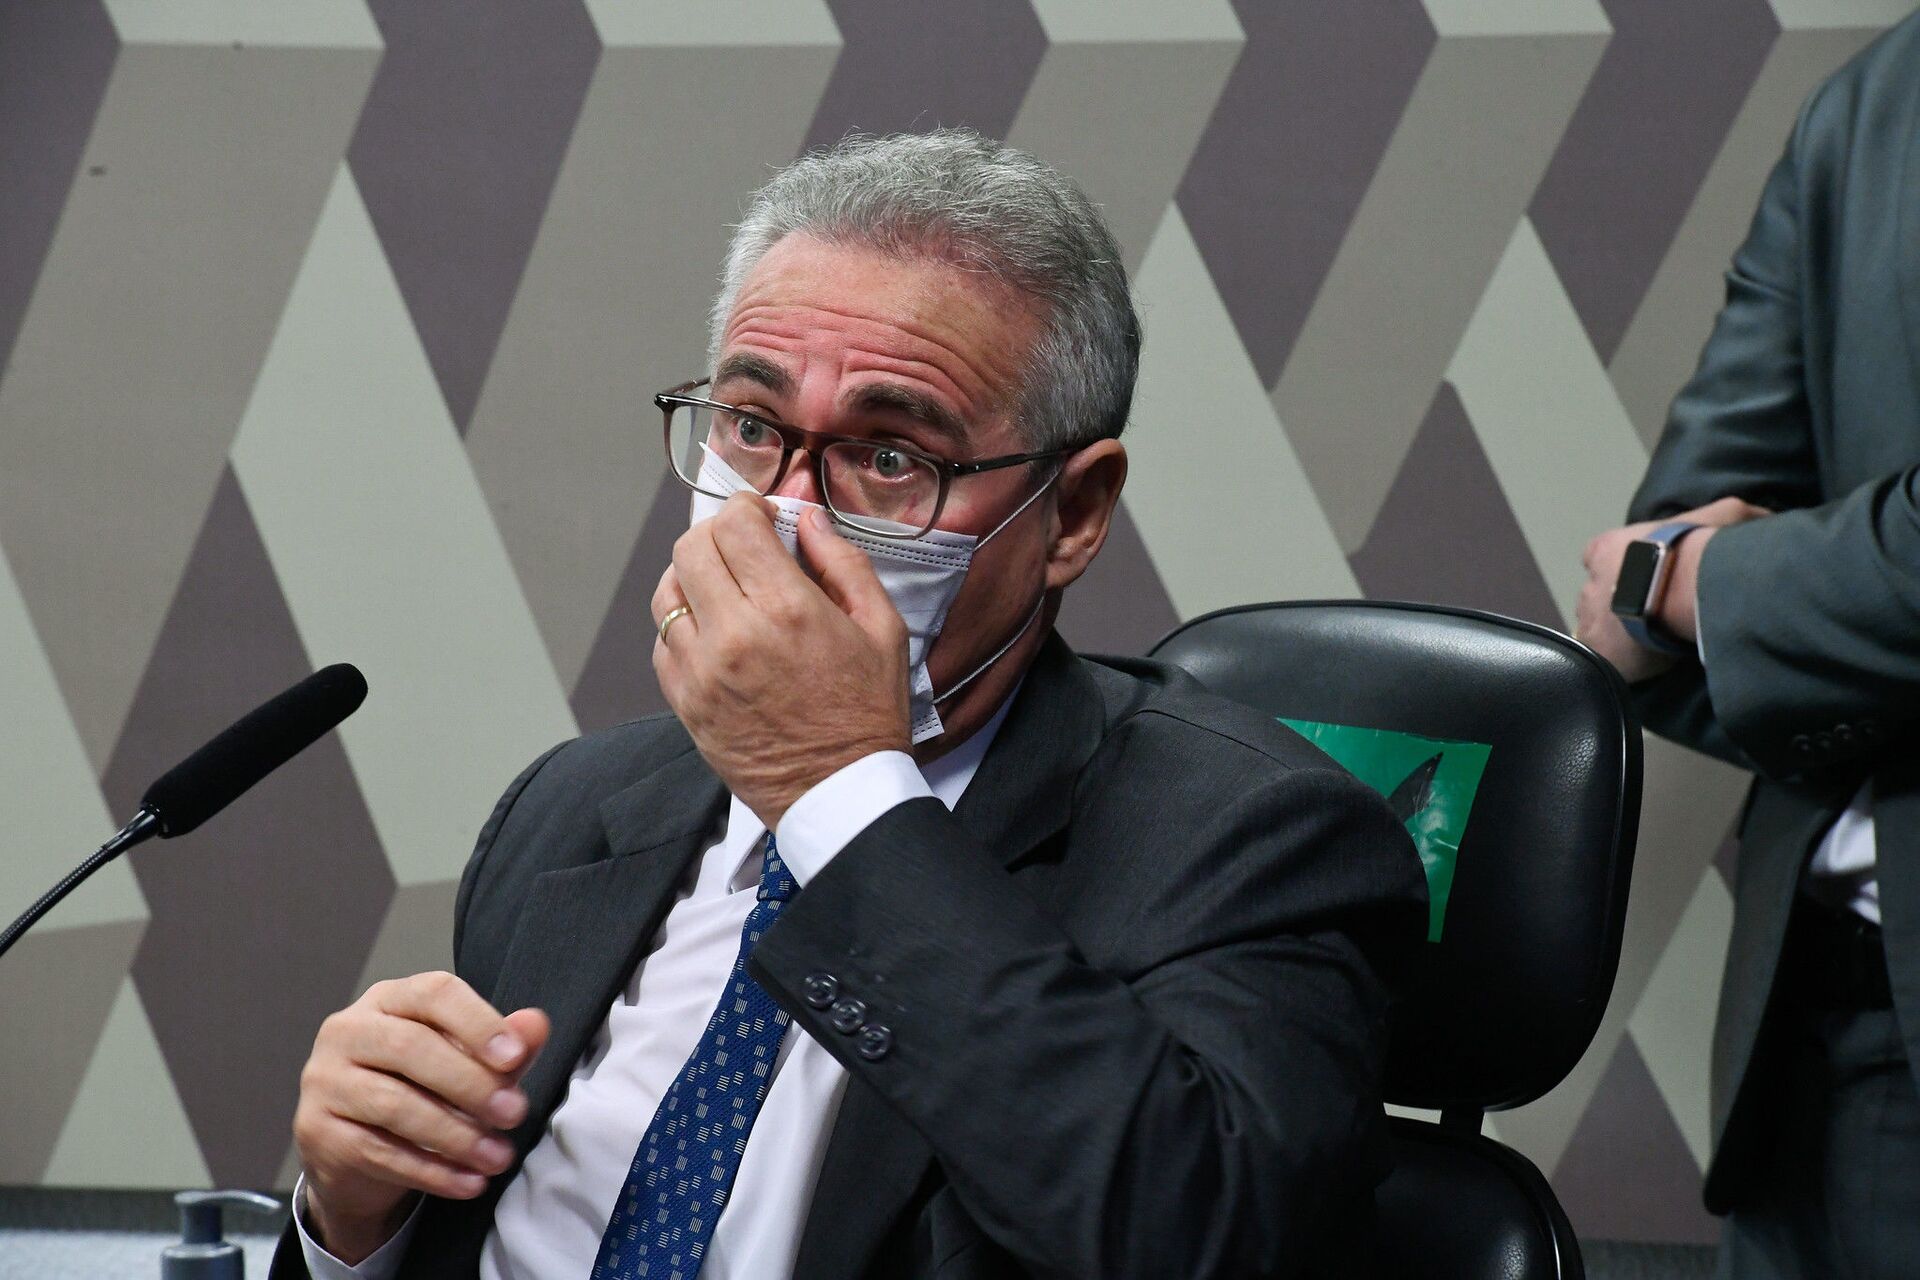 CPI decide enviar ao MPF sugestão de indiciamento de Bolsonaro por charlatanismo, diz mídia - Sputnik Brasil, 1920, 11.08.2021